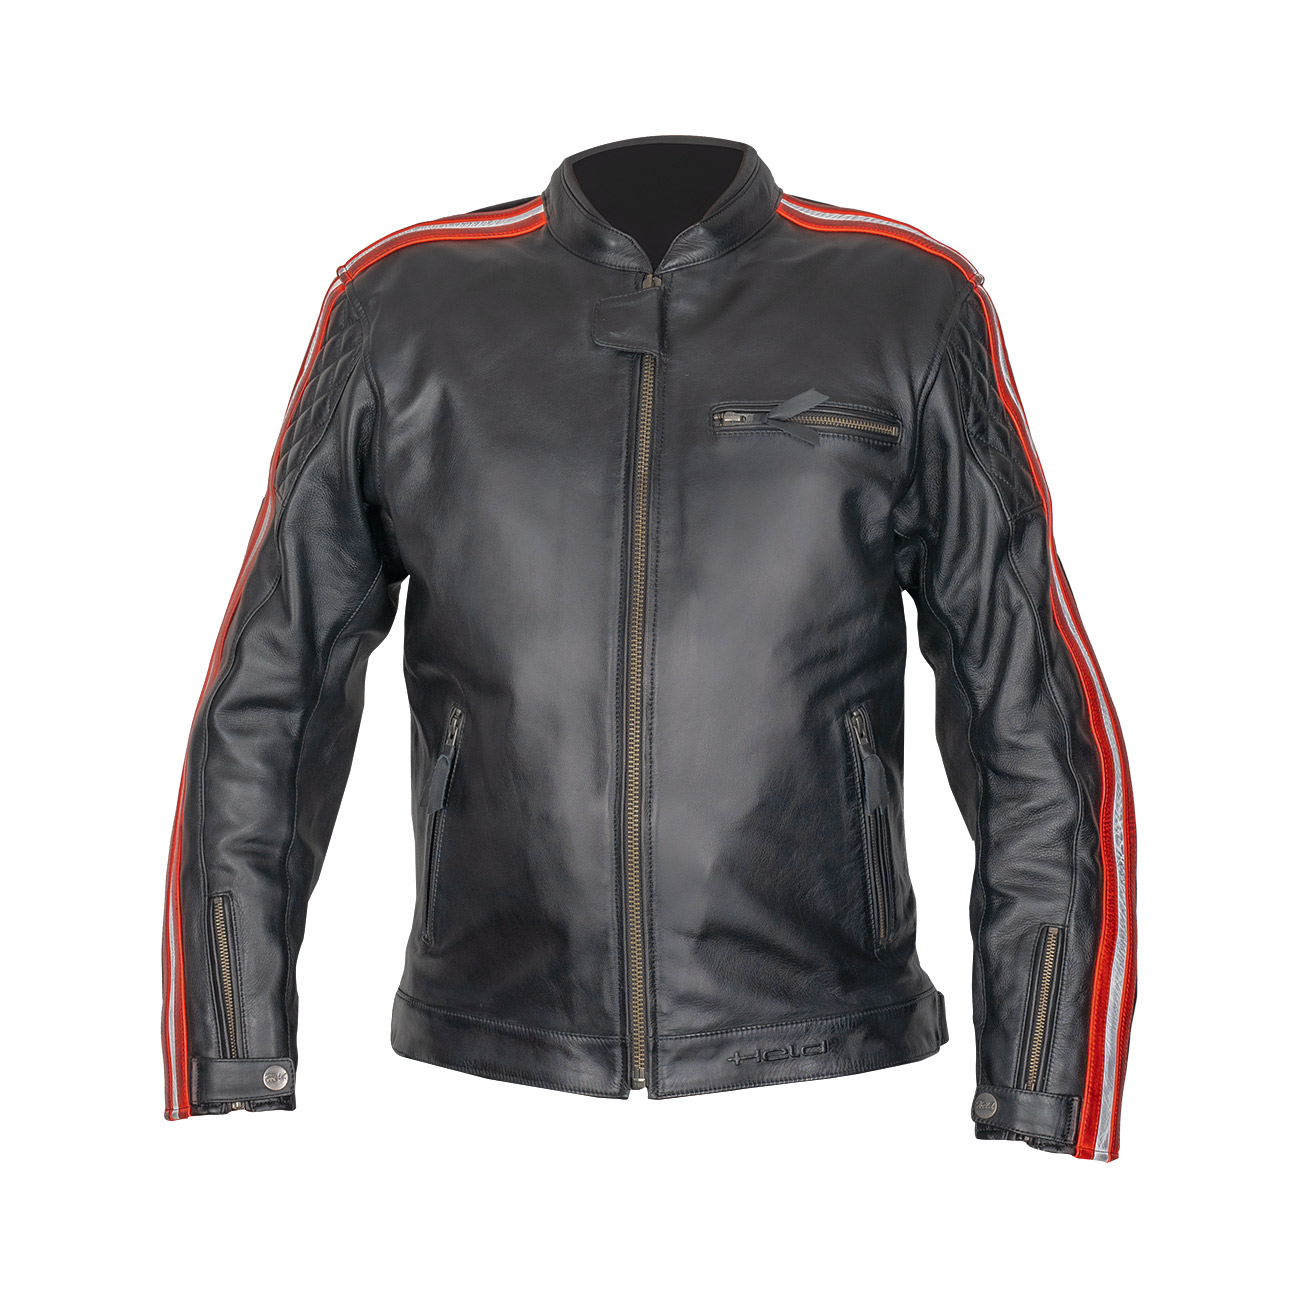 Brixham leather jacket